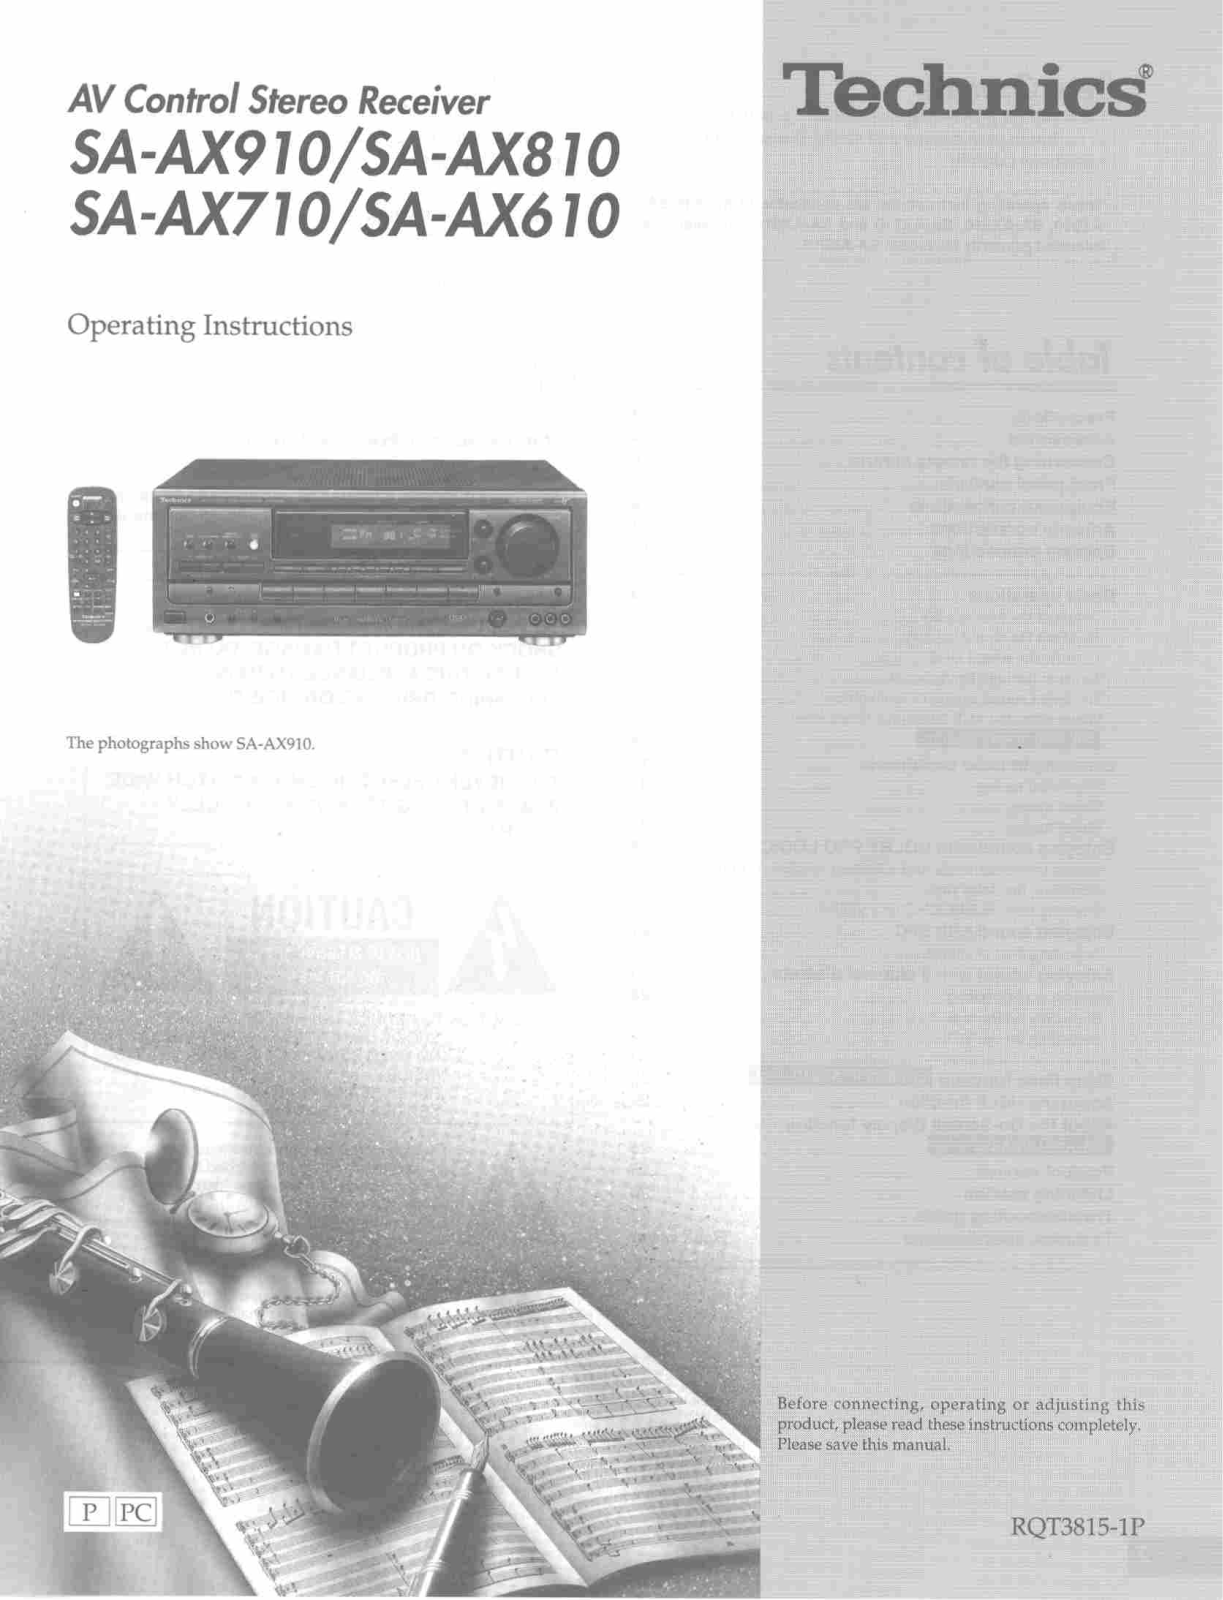 Technics SA-AX810, SA-AX710, SA-AX610, SA-AX910 Owners Manual